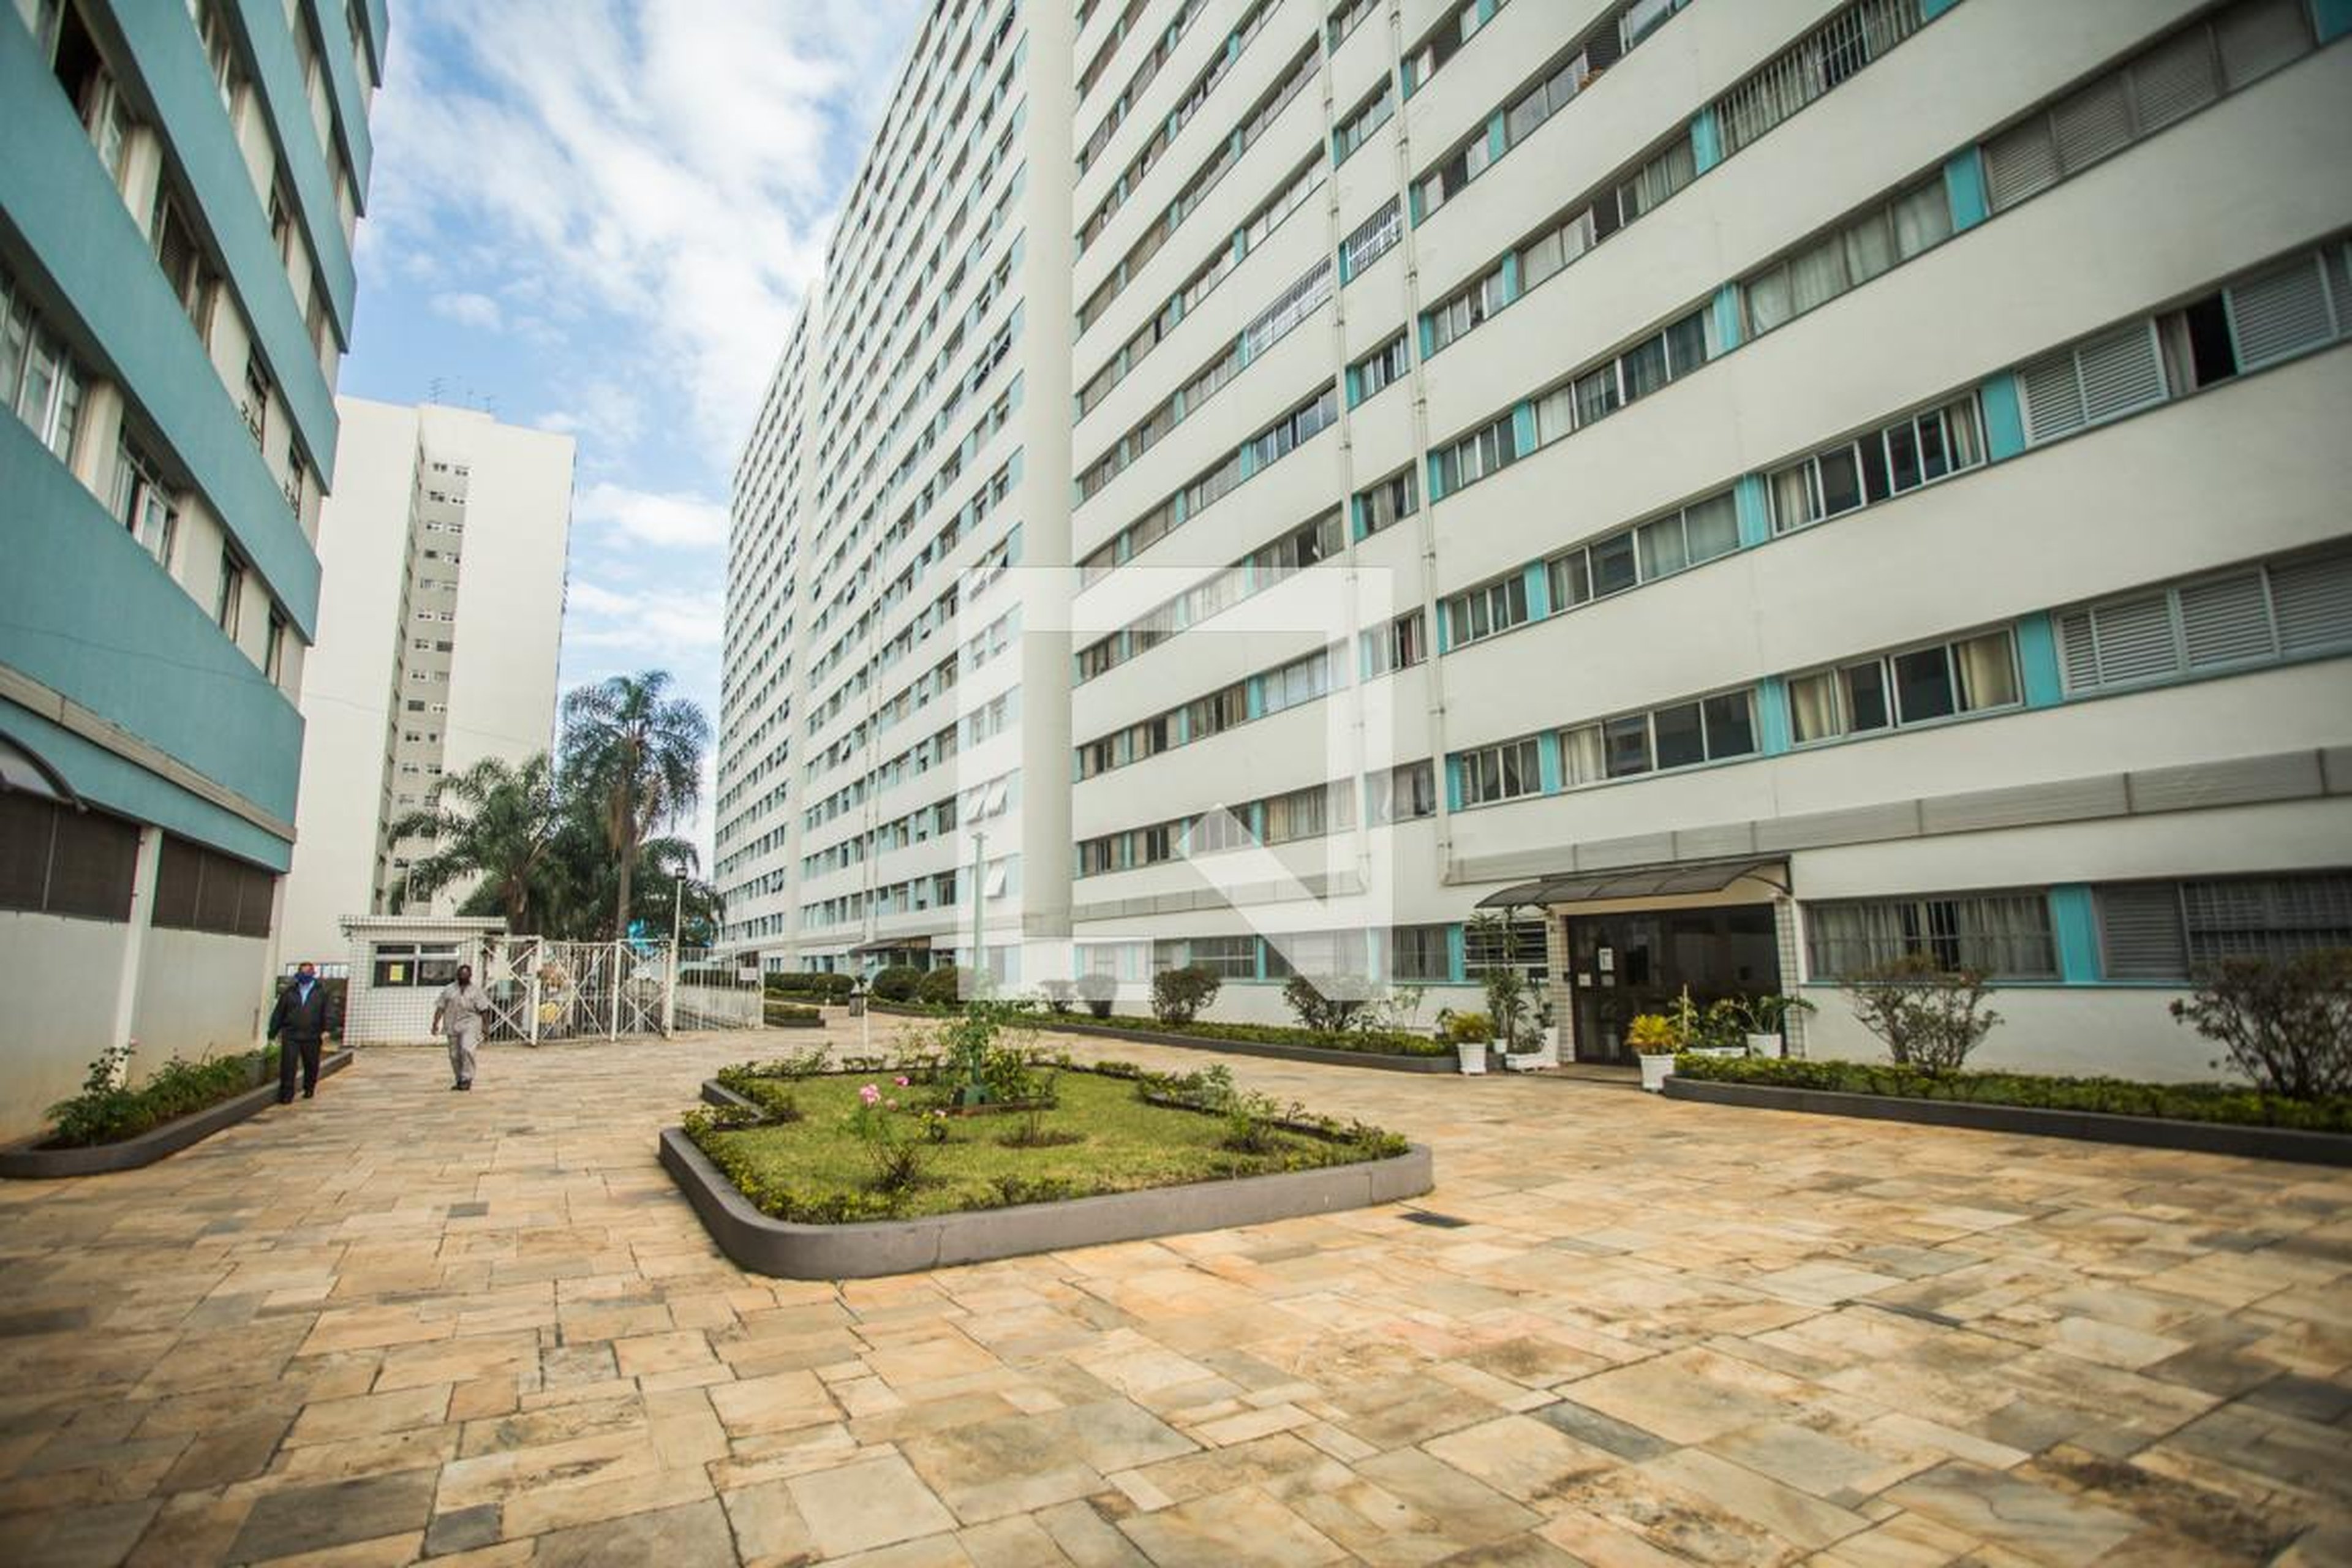 Área comum - Edifício Vila Mariana